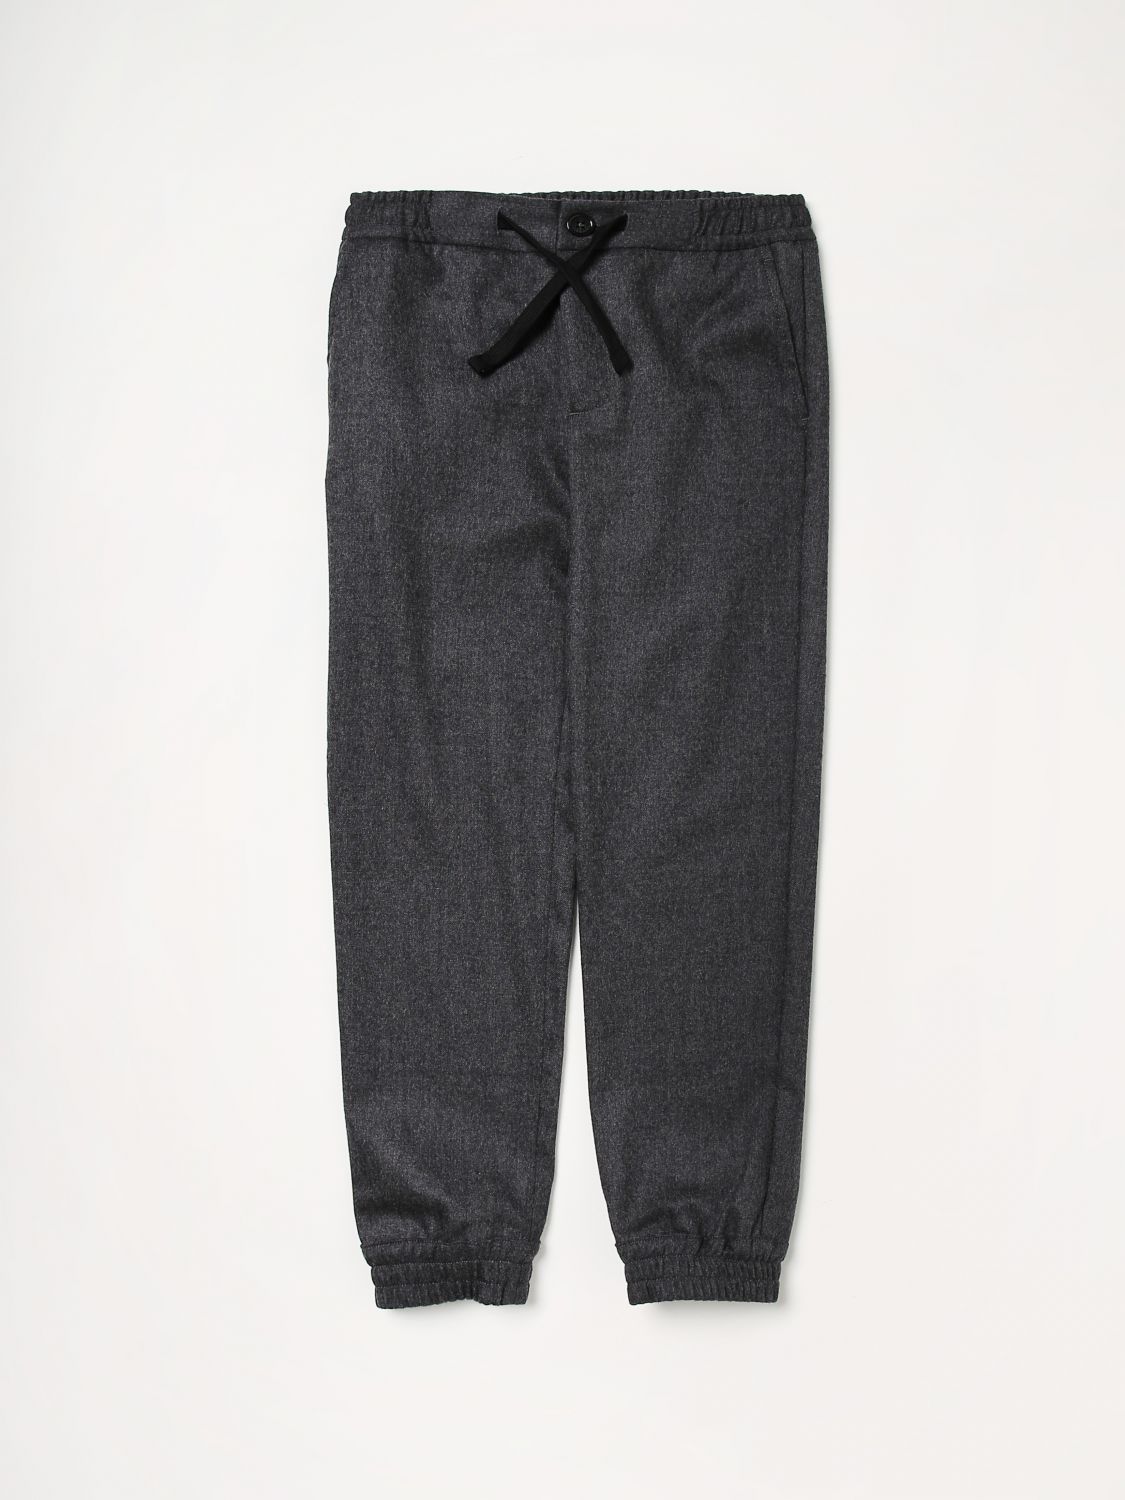 Dolce & Gabbana Kids' Wool Trousers In Grey